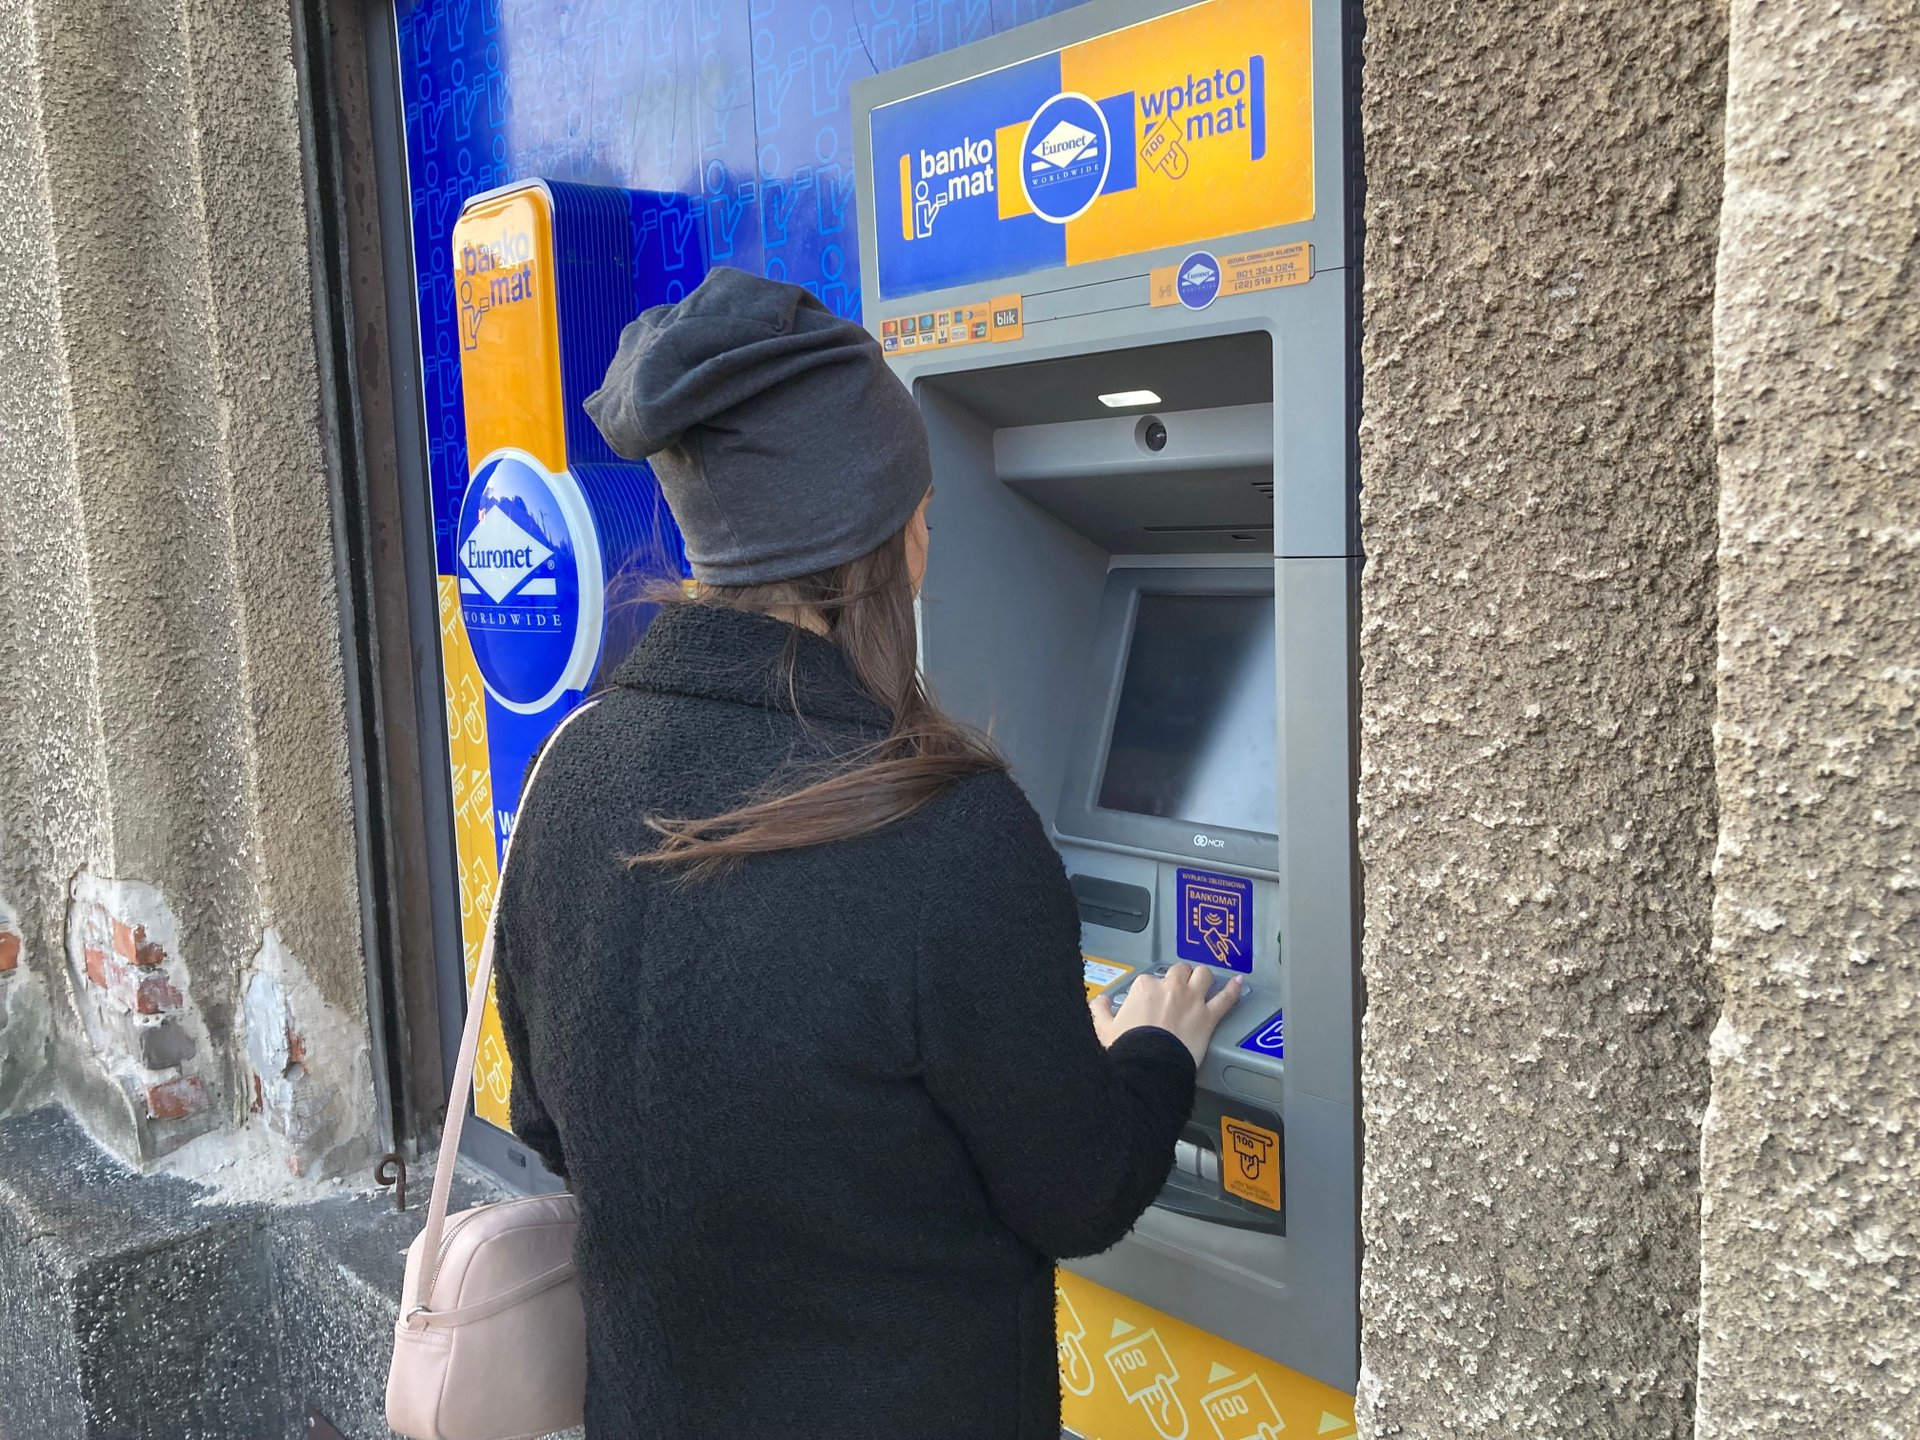 bankomat-euronet-wypłata pieniędzy-kobieta-biznesinfo